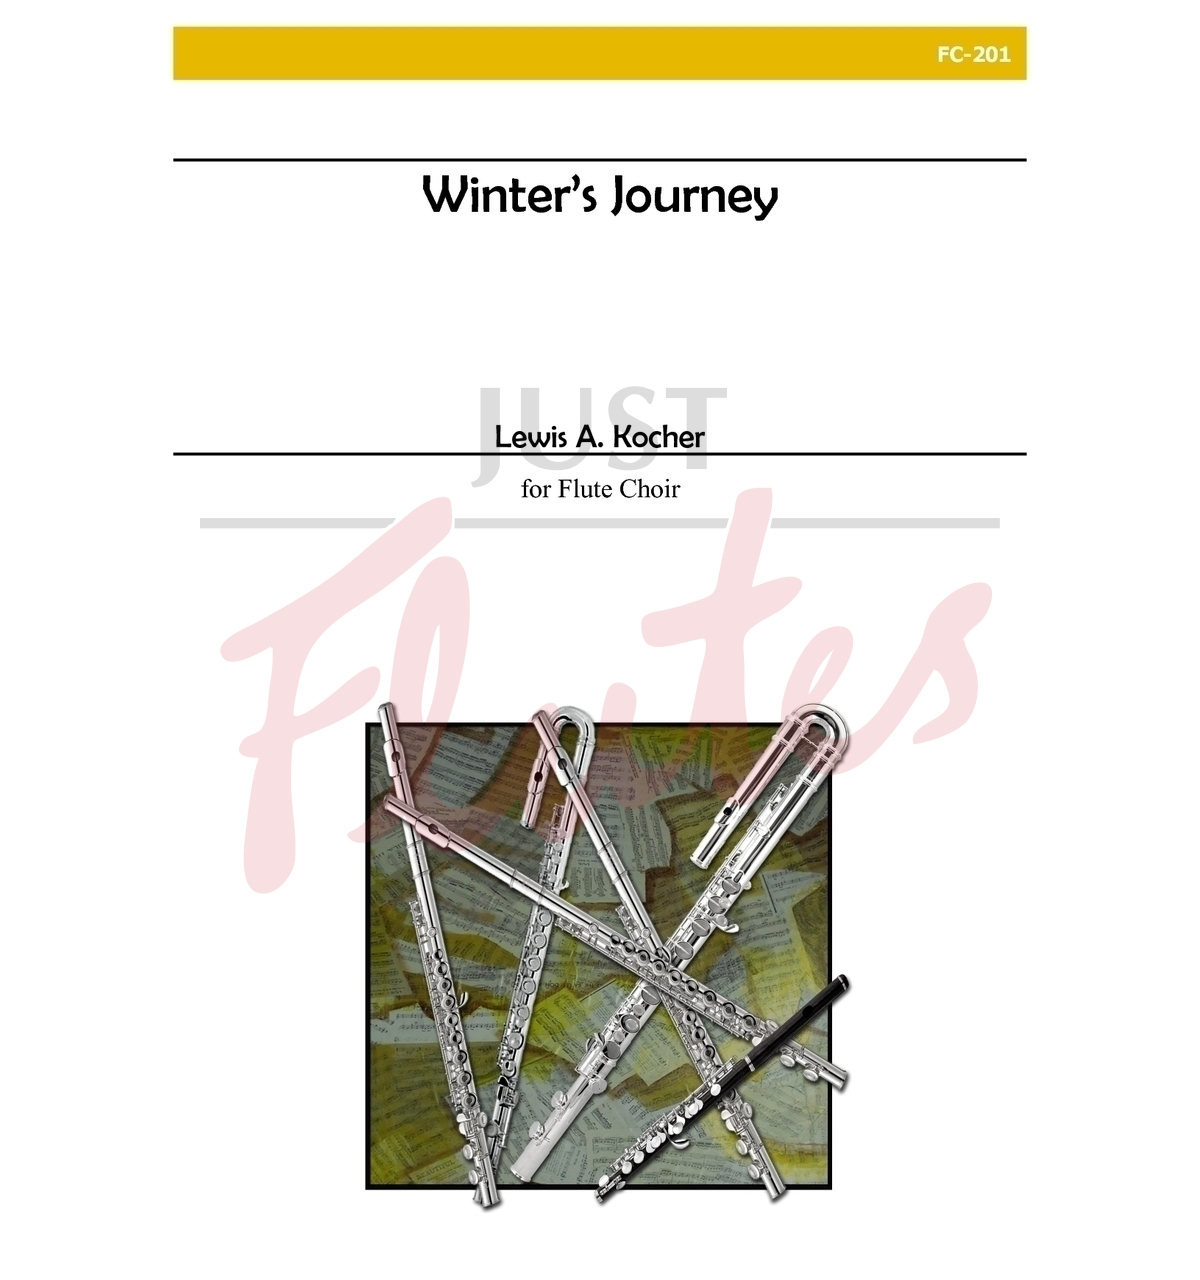 Winter's Journey for Flute Choir